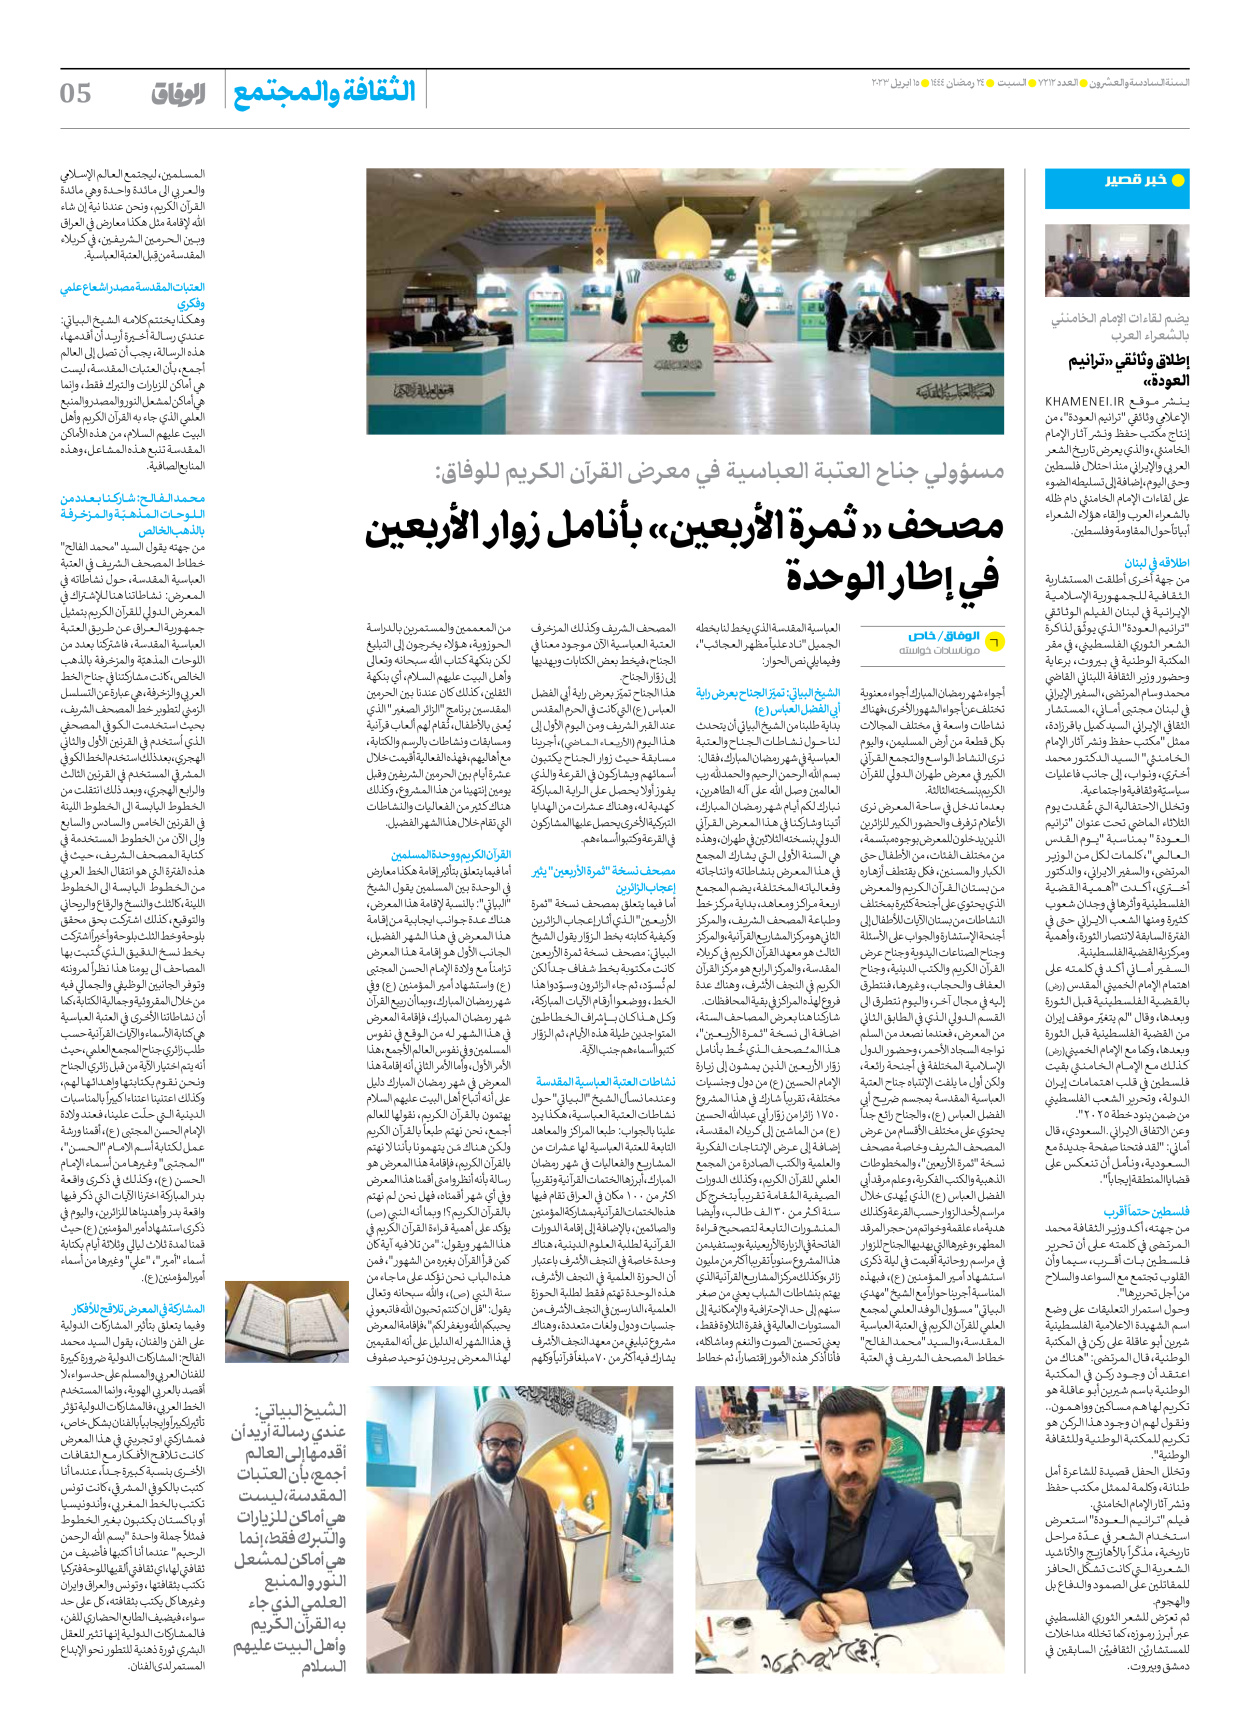 صحیفة ایران الدولیة الوفاق - العدد سبعة آلاف ومائتان واثنا عشر - ١٥ أبريل ٢٠٢٣ - الصفحة ٥